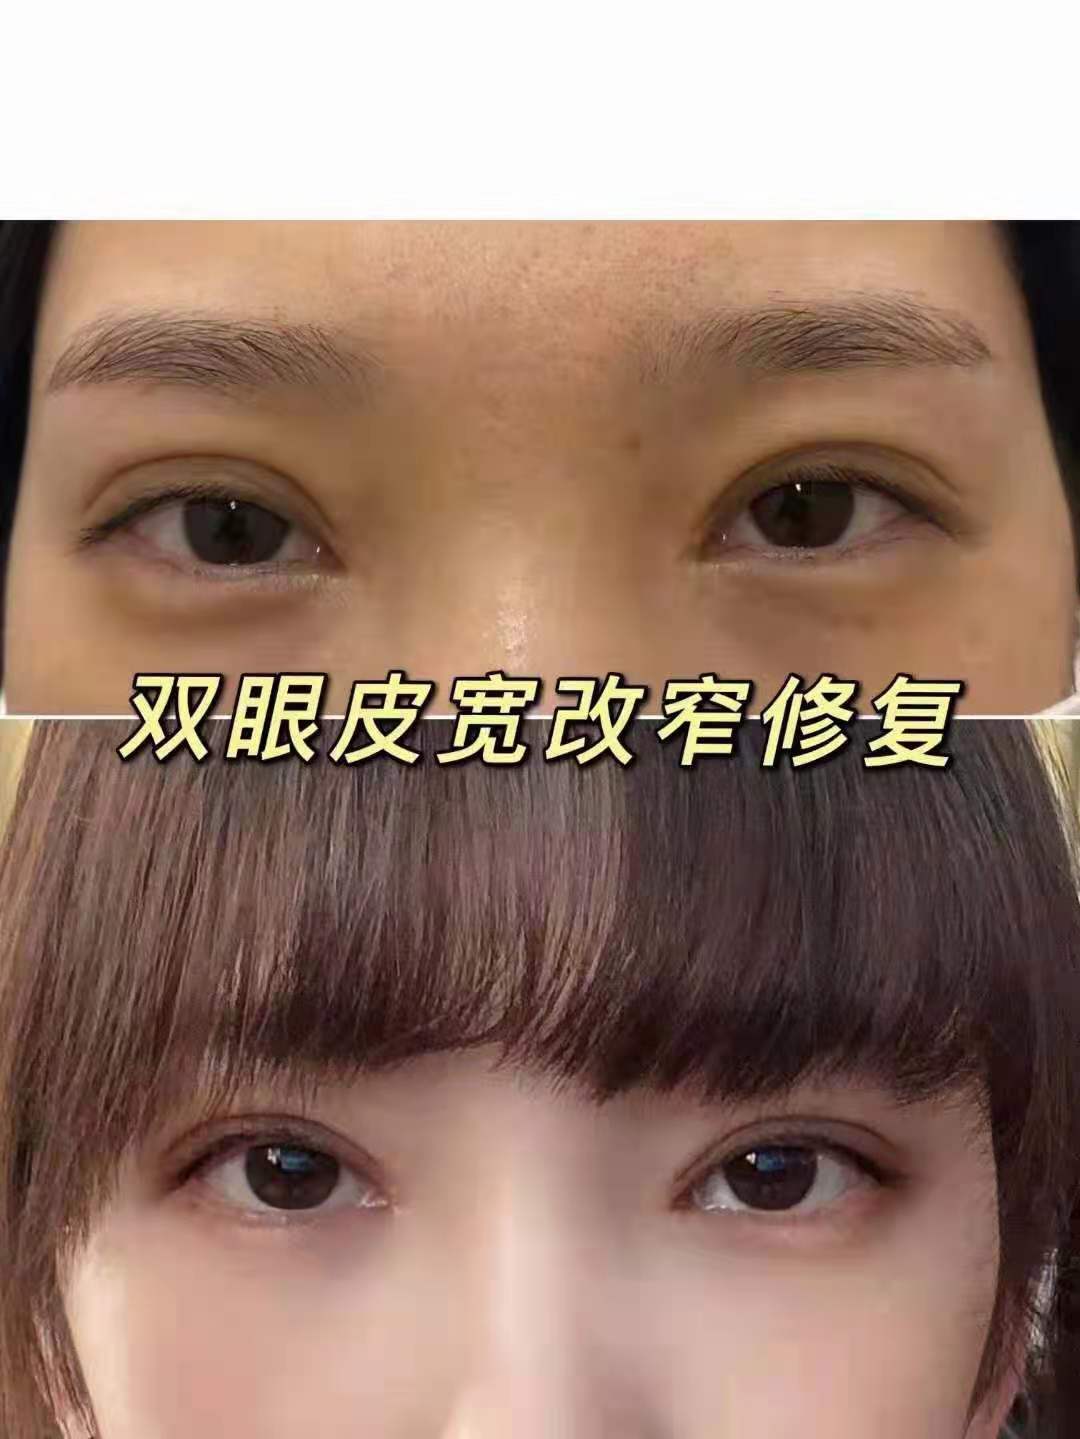 彭昌福修复双眼皮技术怎么样